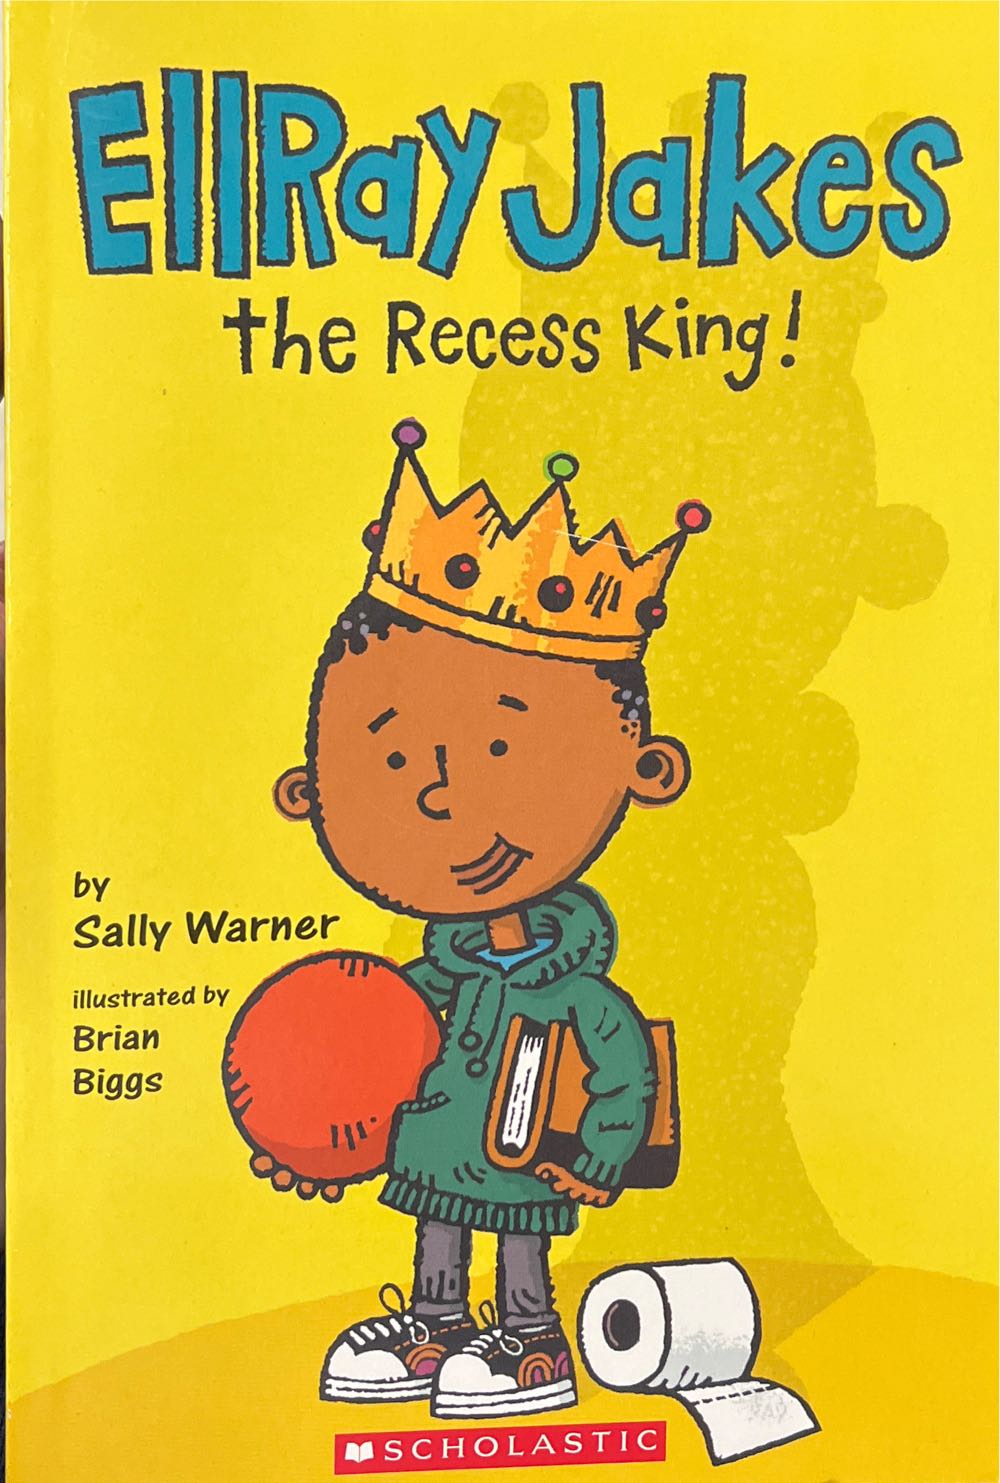 EllRay Jakes the Recess King! - Sally Warner book collectible [Barcode 9781338272734] - Main Image 1